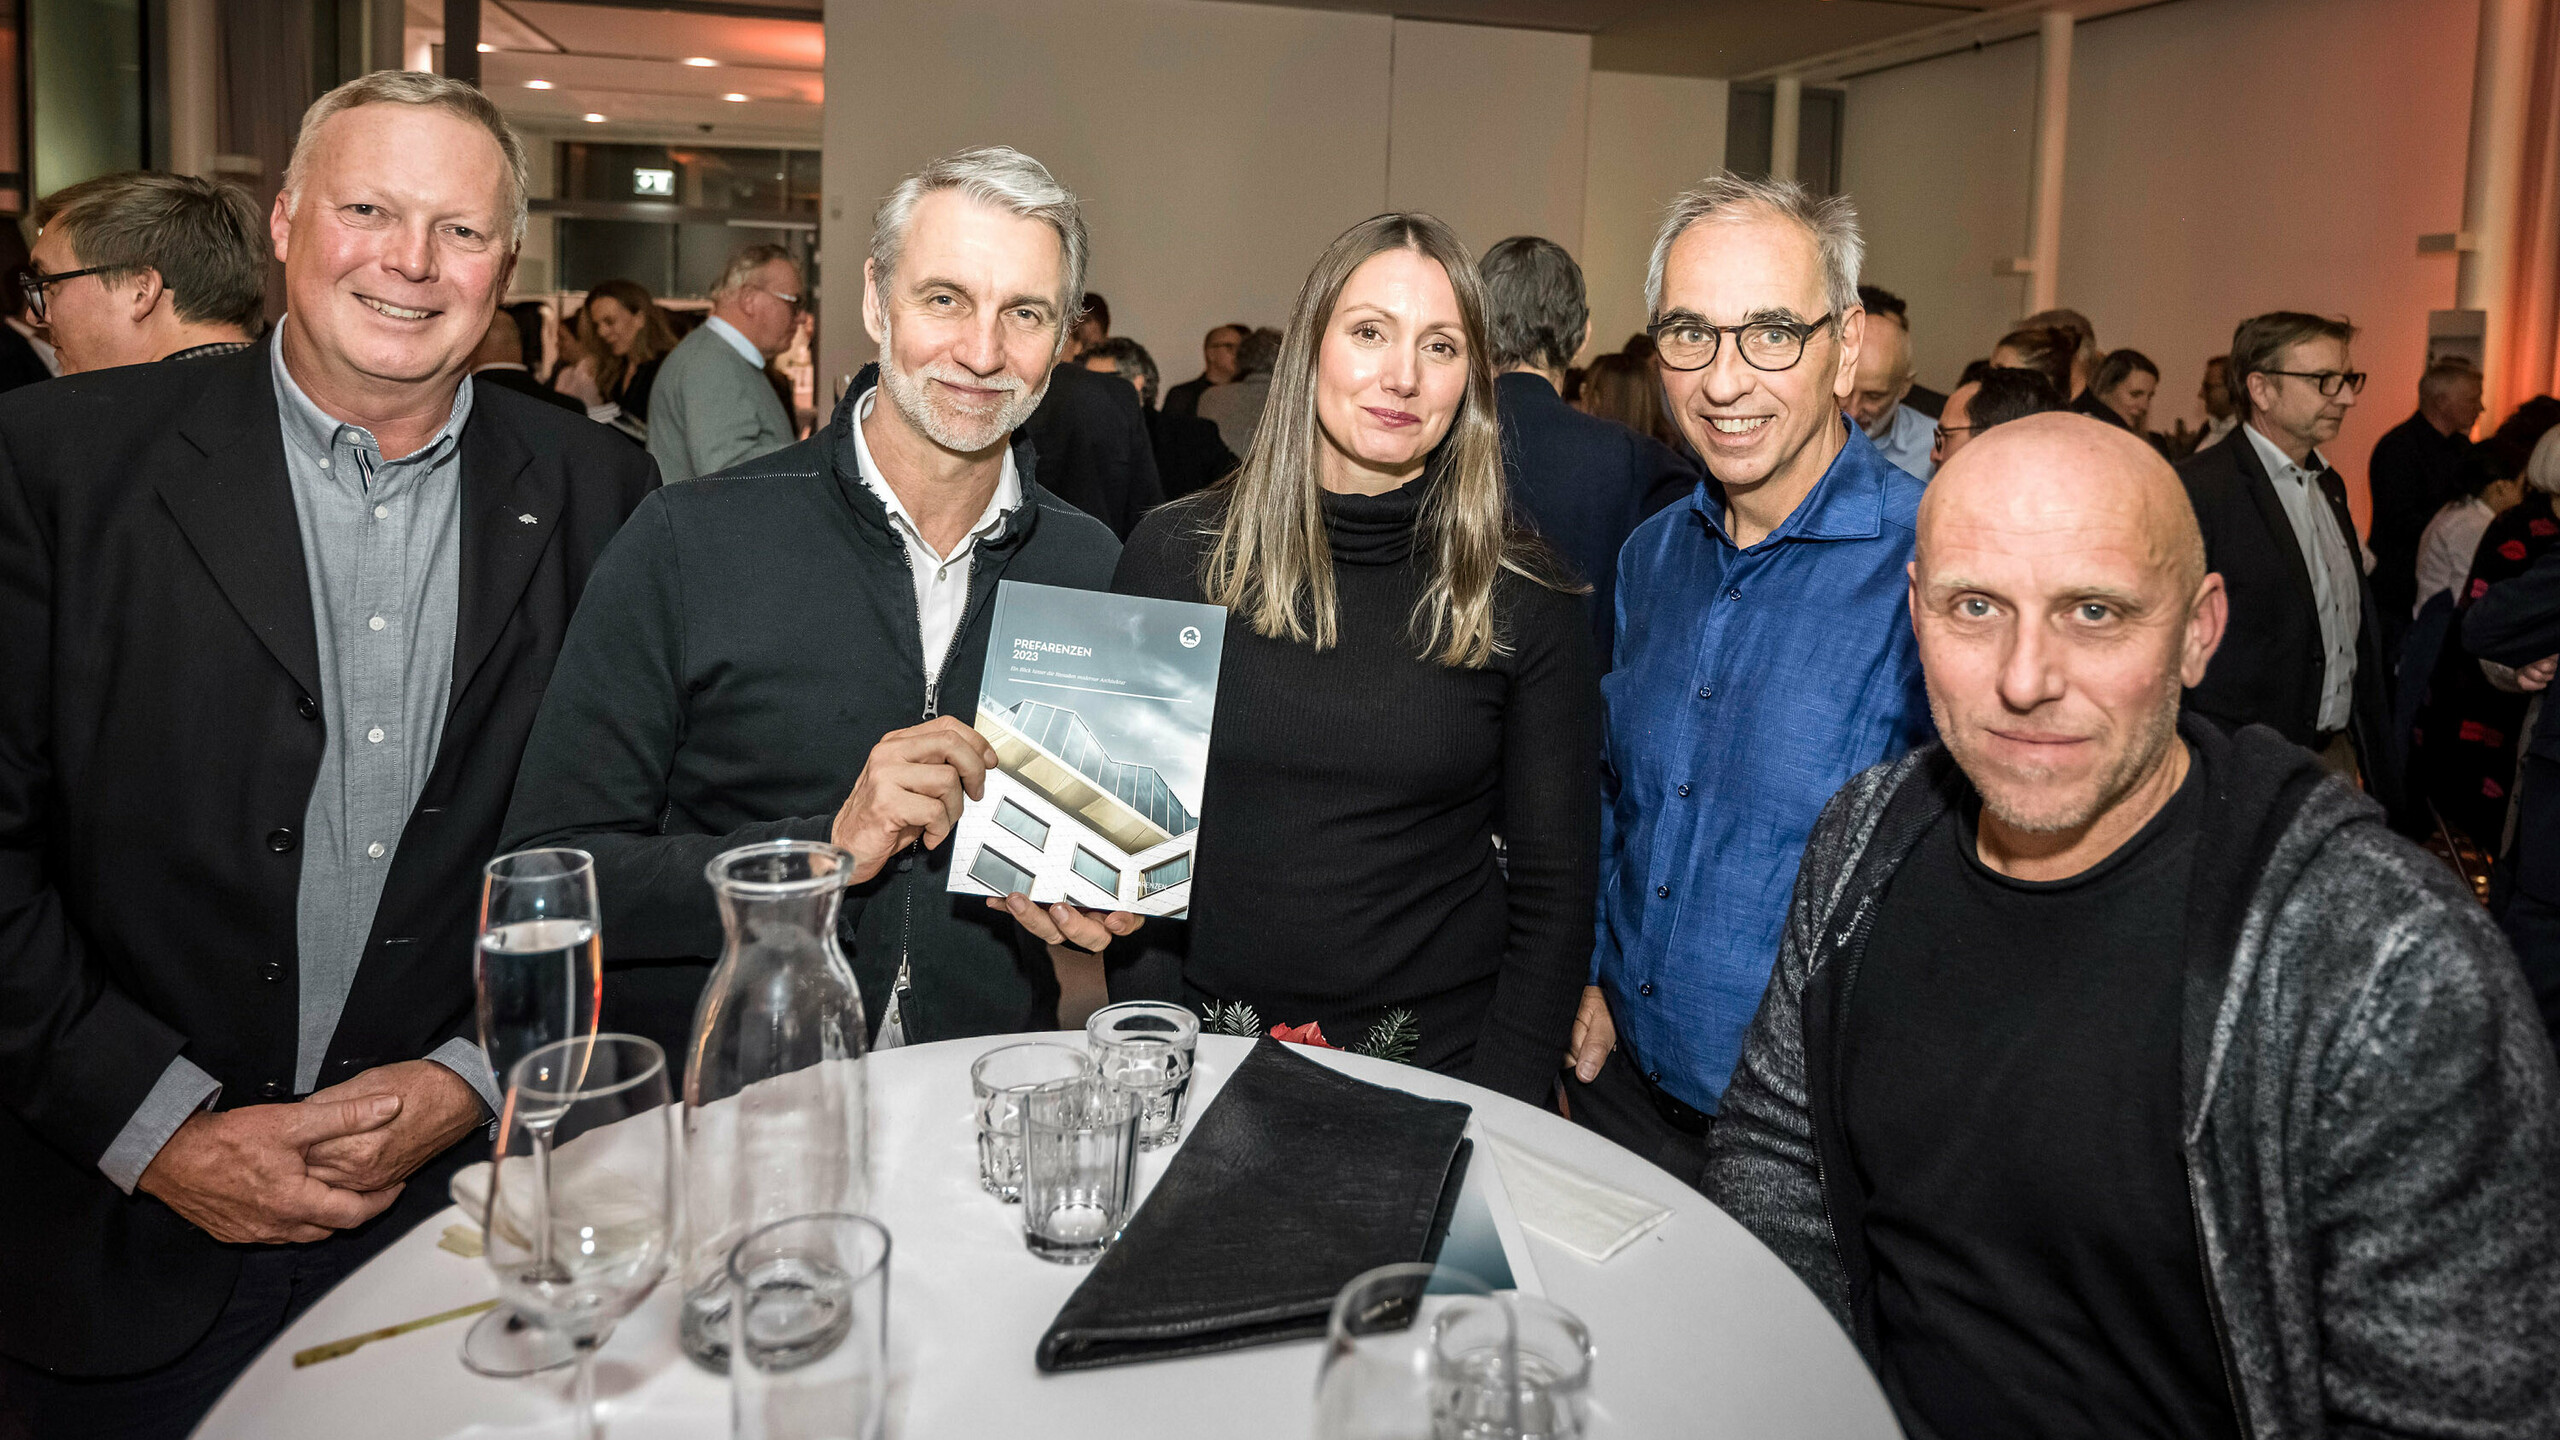 Gerald Krebs, Architekt Oliver Kupfner mit dem Buch in der Hand, Anastasija Lesjak, Wolfgang Croce, Martin Lesjak.